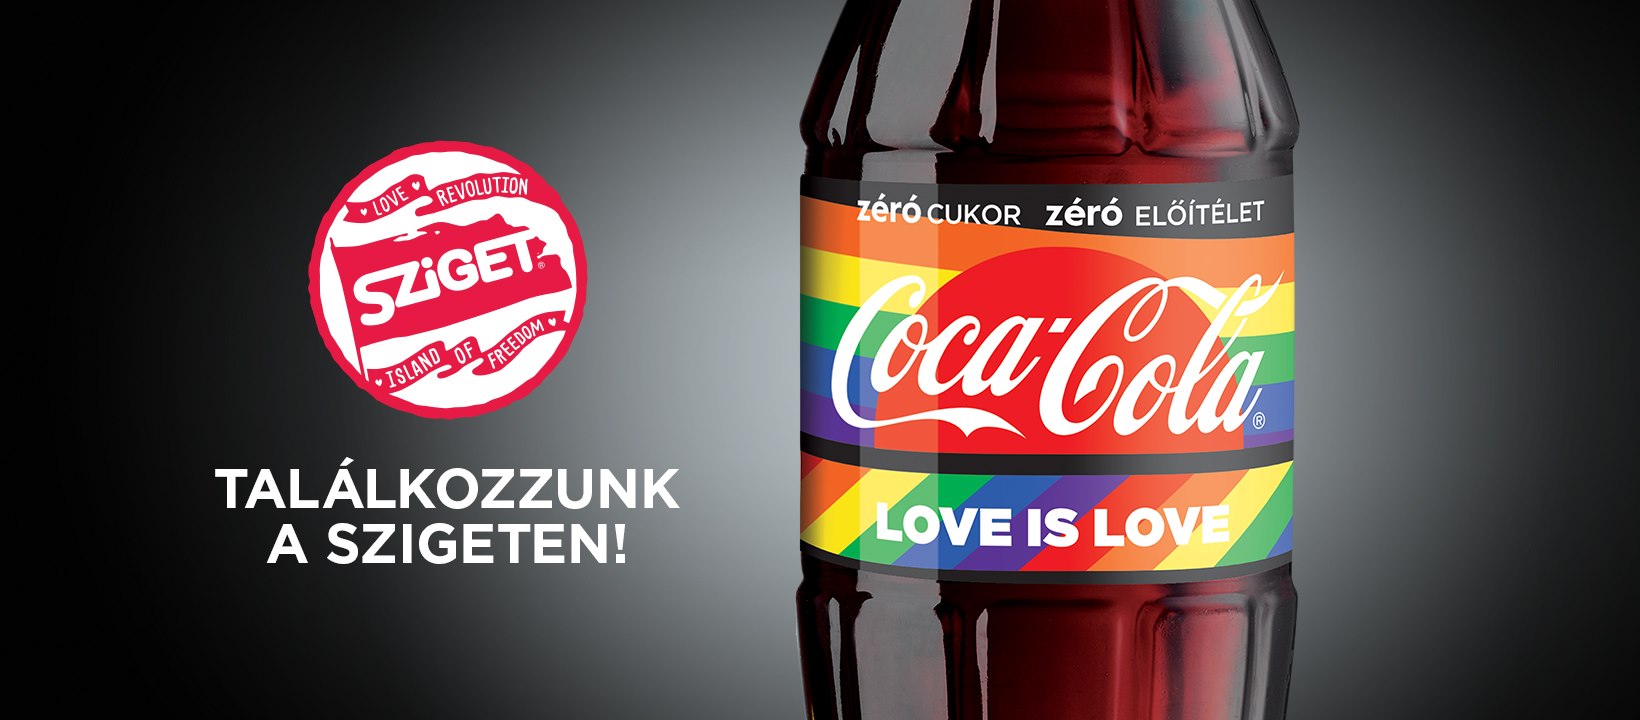 可口可乐匈牙利产品 图片来自今日匈牙利